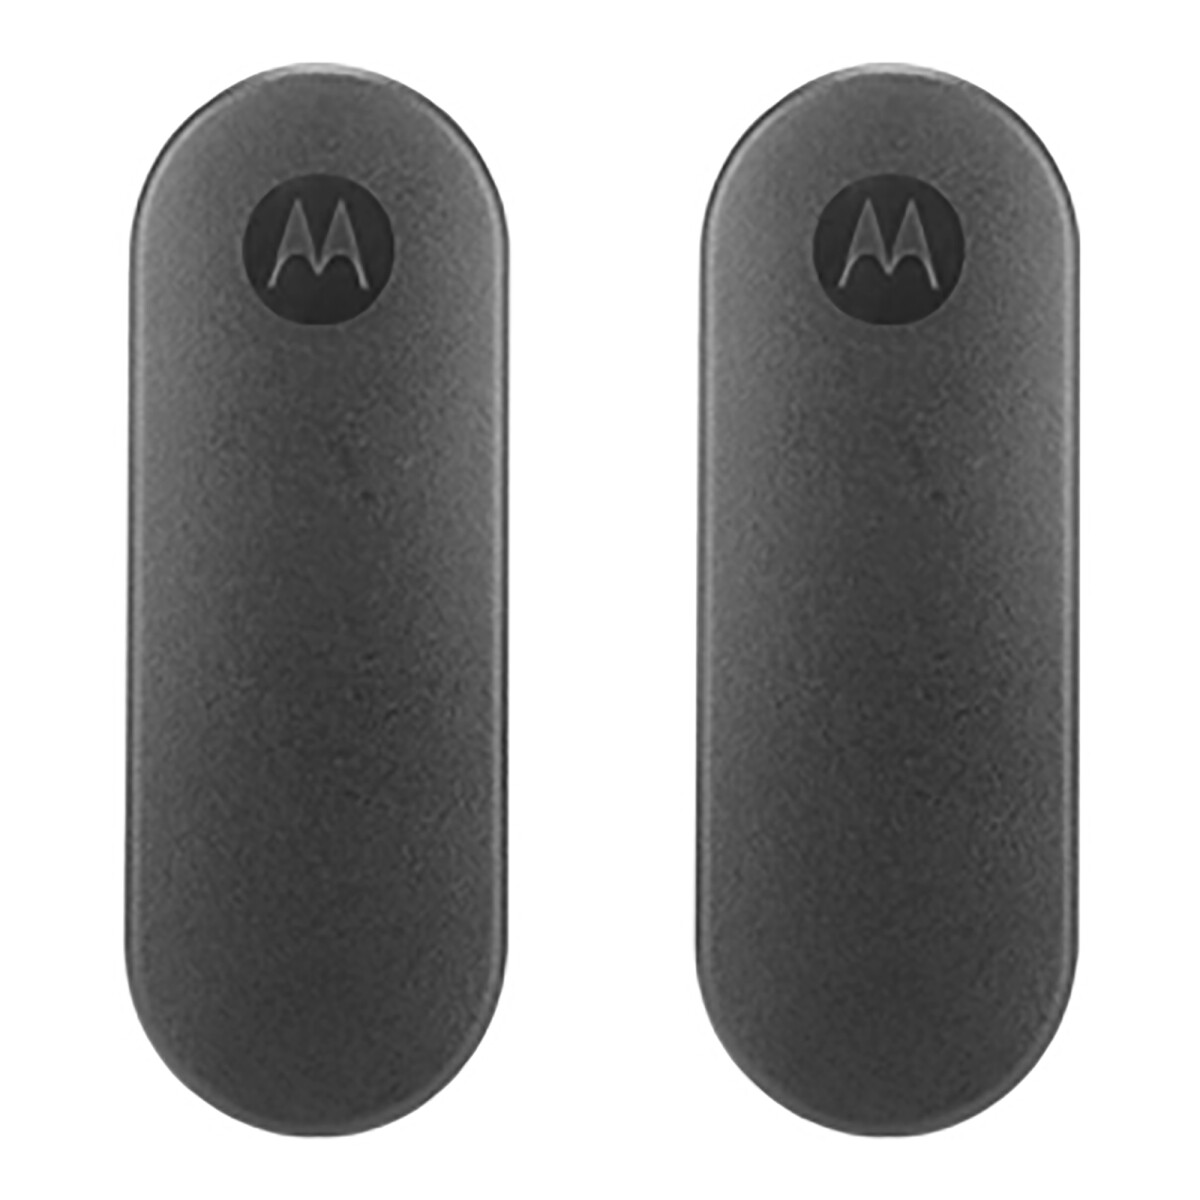 Motorola - Clip de Radio para Cinturón - Motorola Talkabout Series T400 / T500 / T600. - 001 